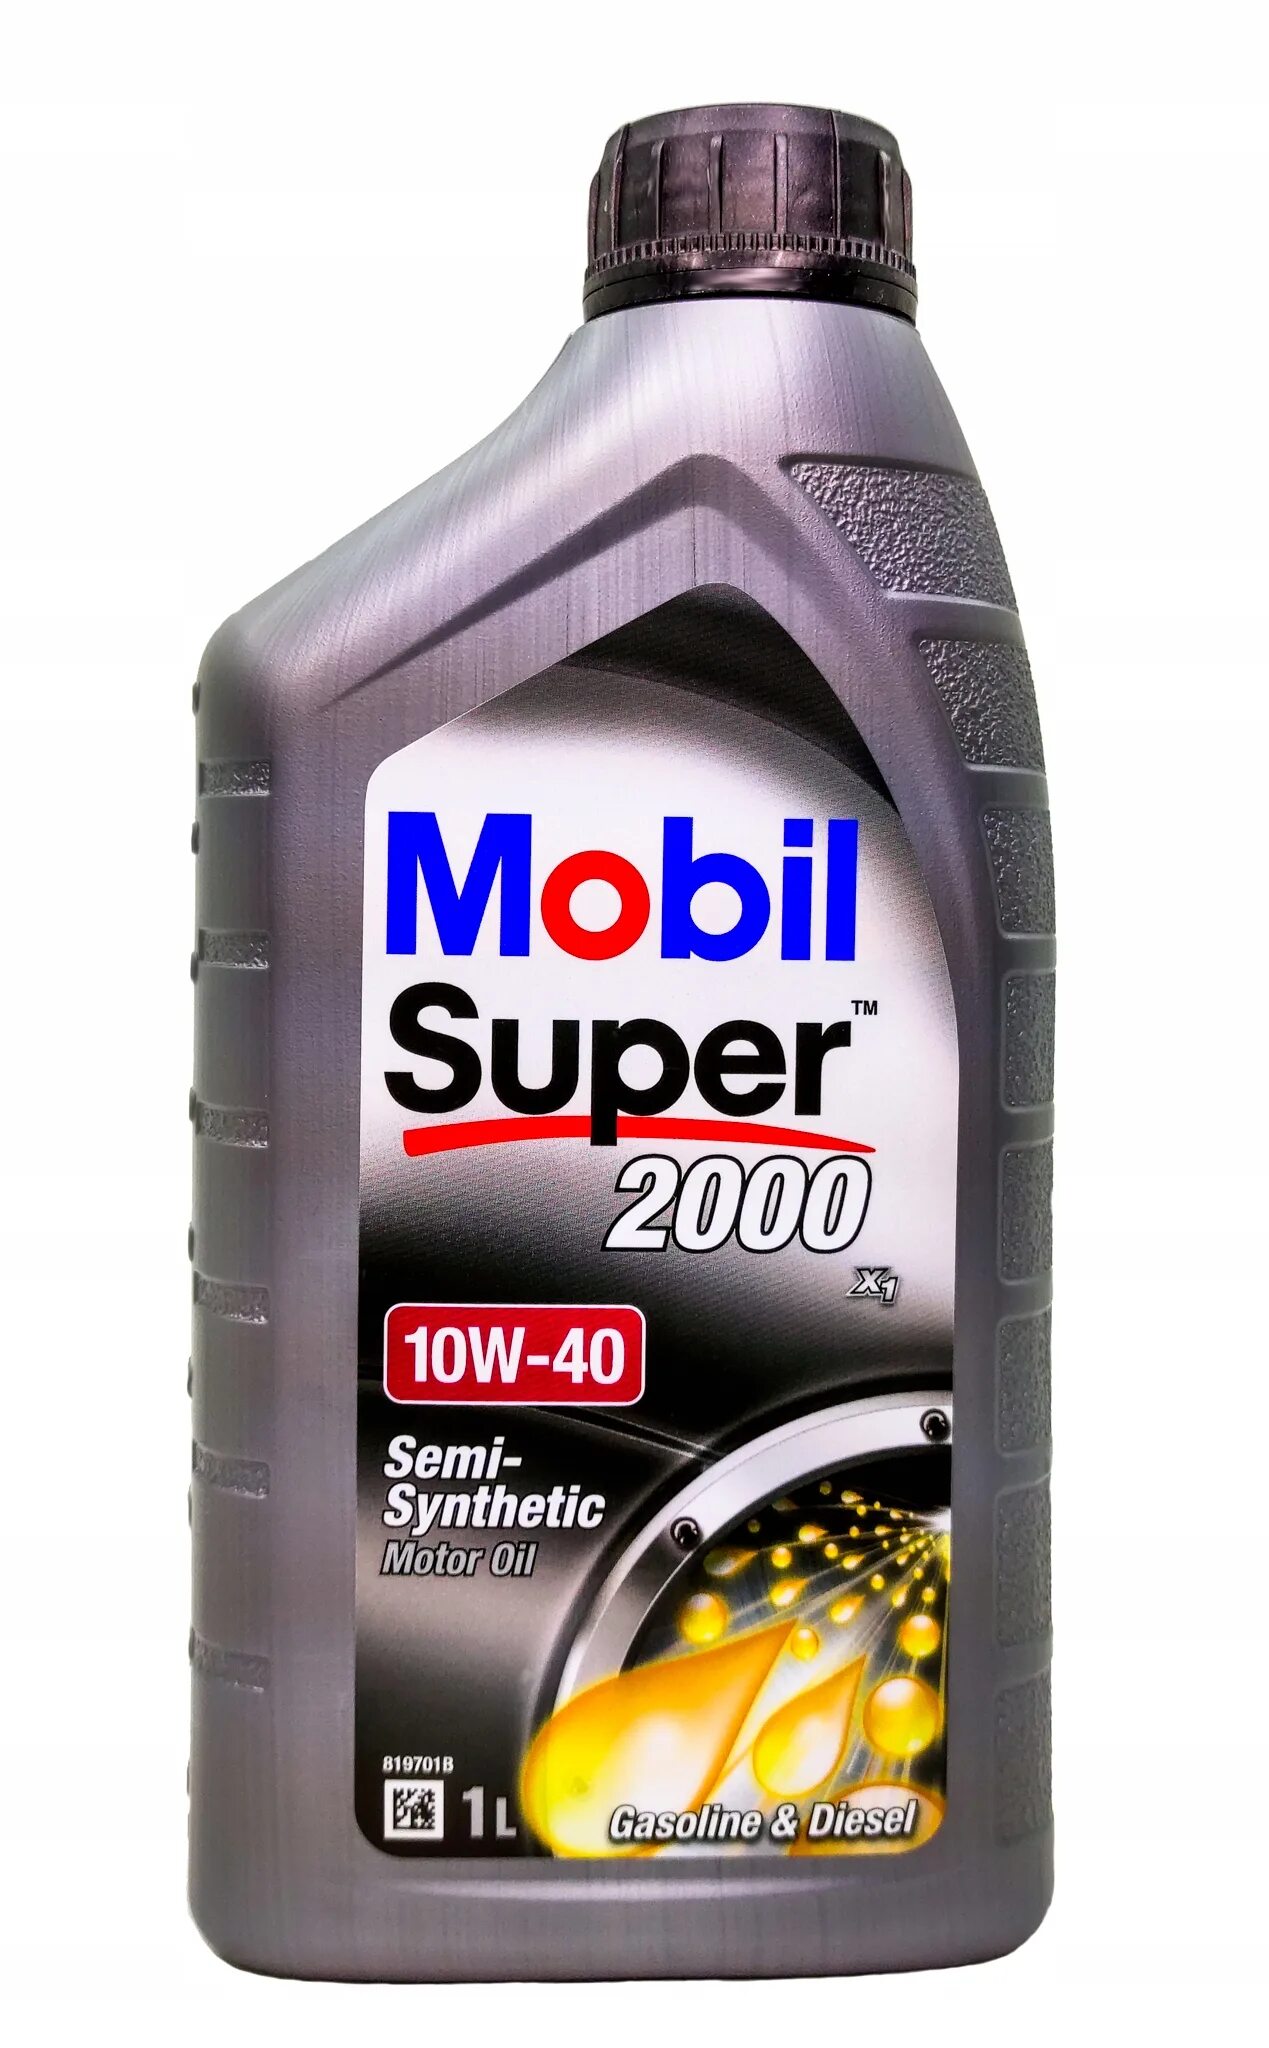 Mobil super 2000. Масло мобил супер 2000. Масло мобил 1 10 на 40. Mobil super 2000 новая упаковка. Мобил супер отзывы